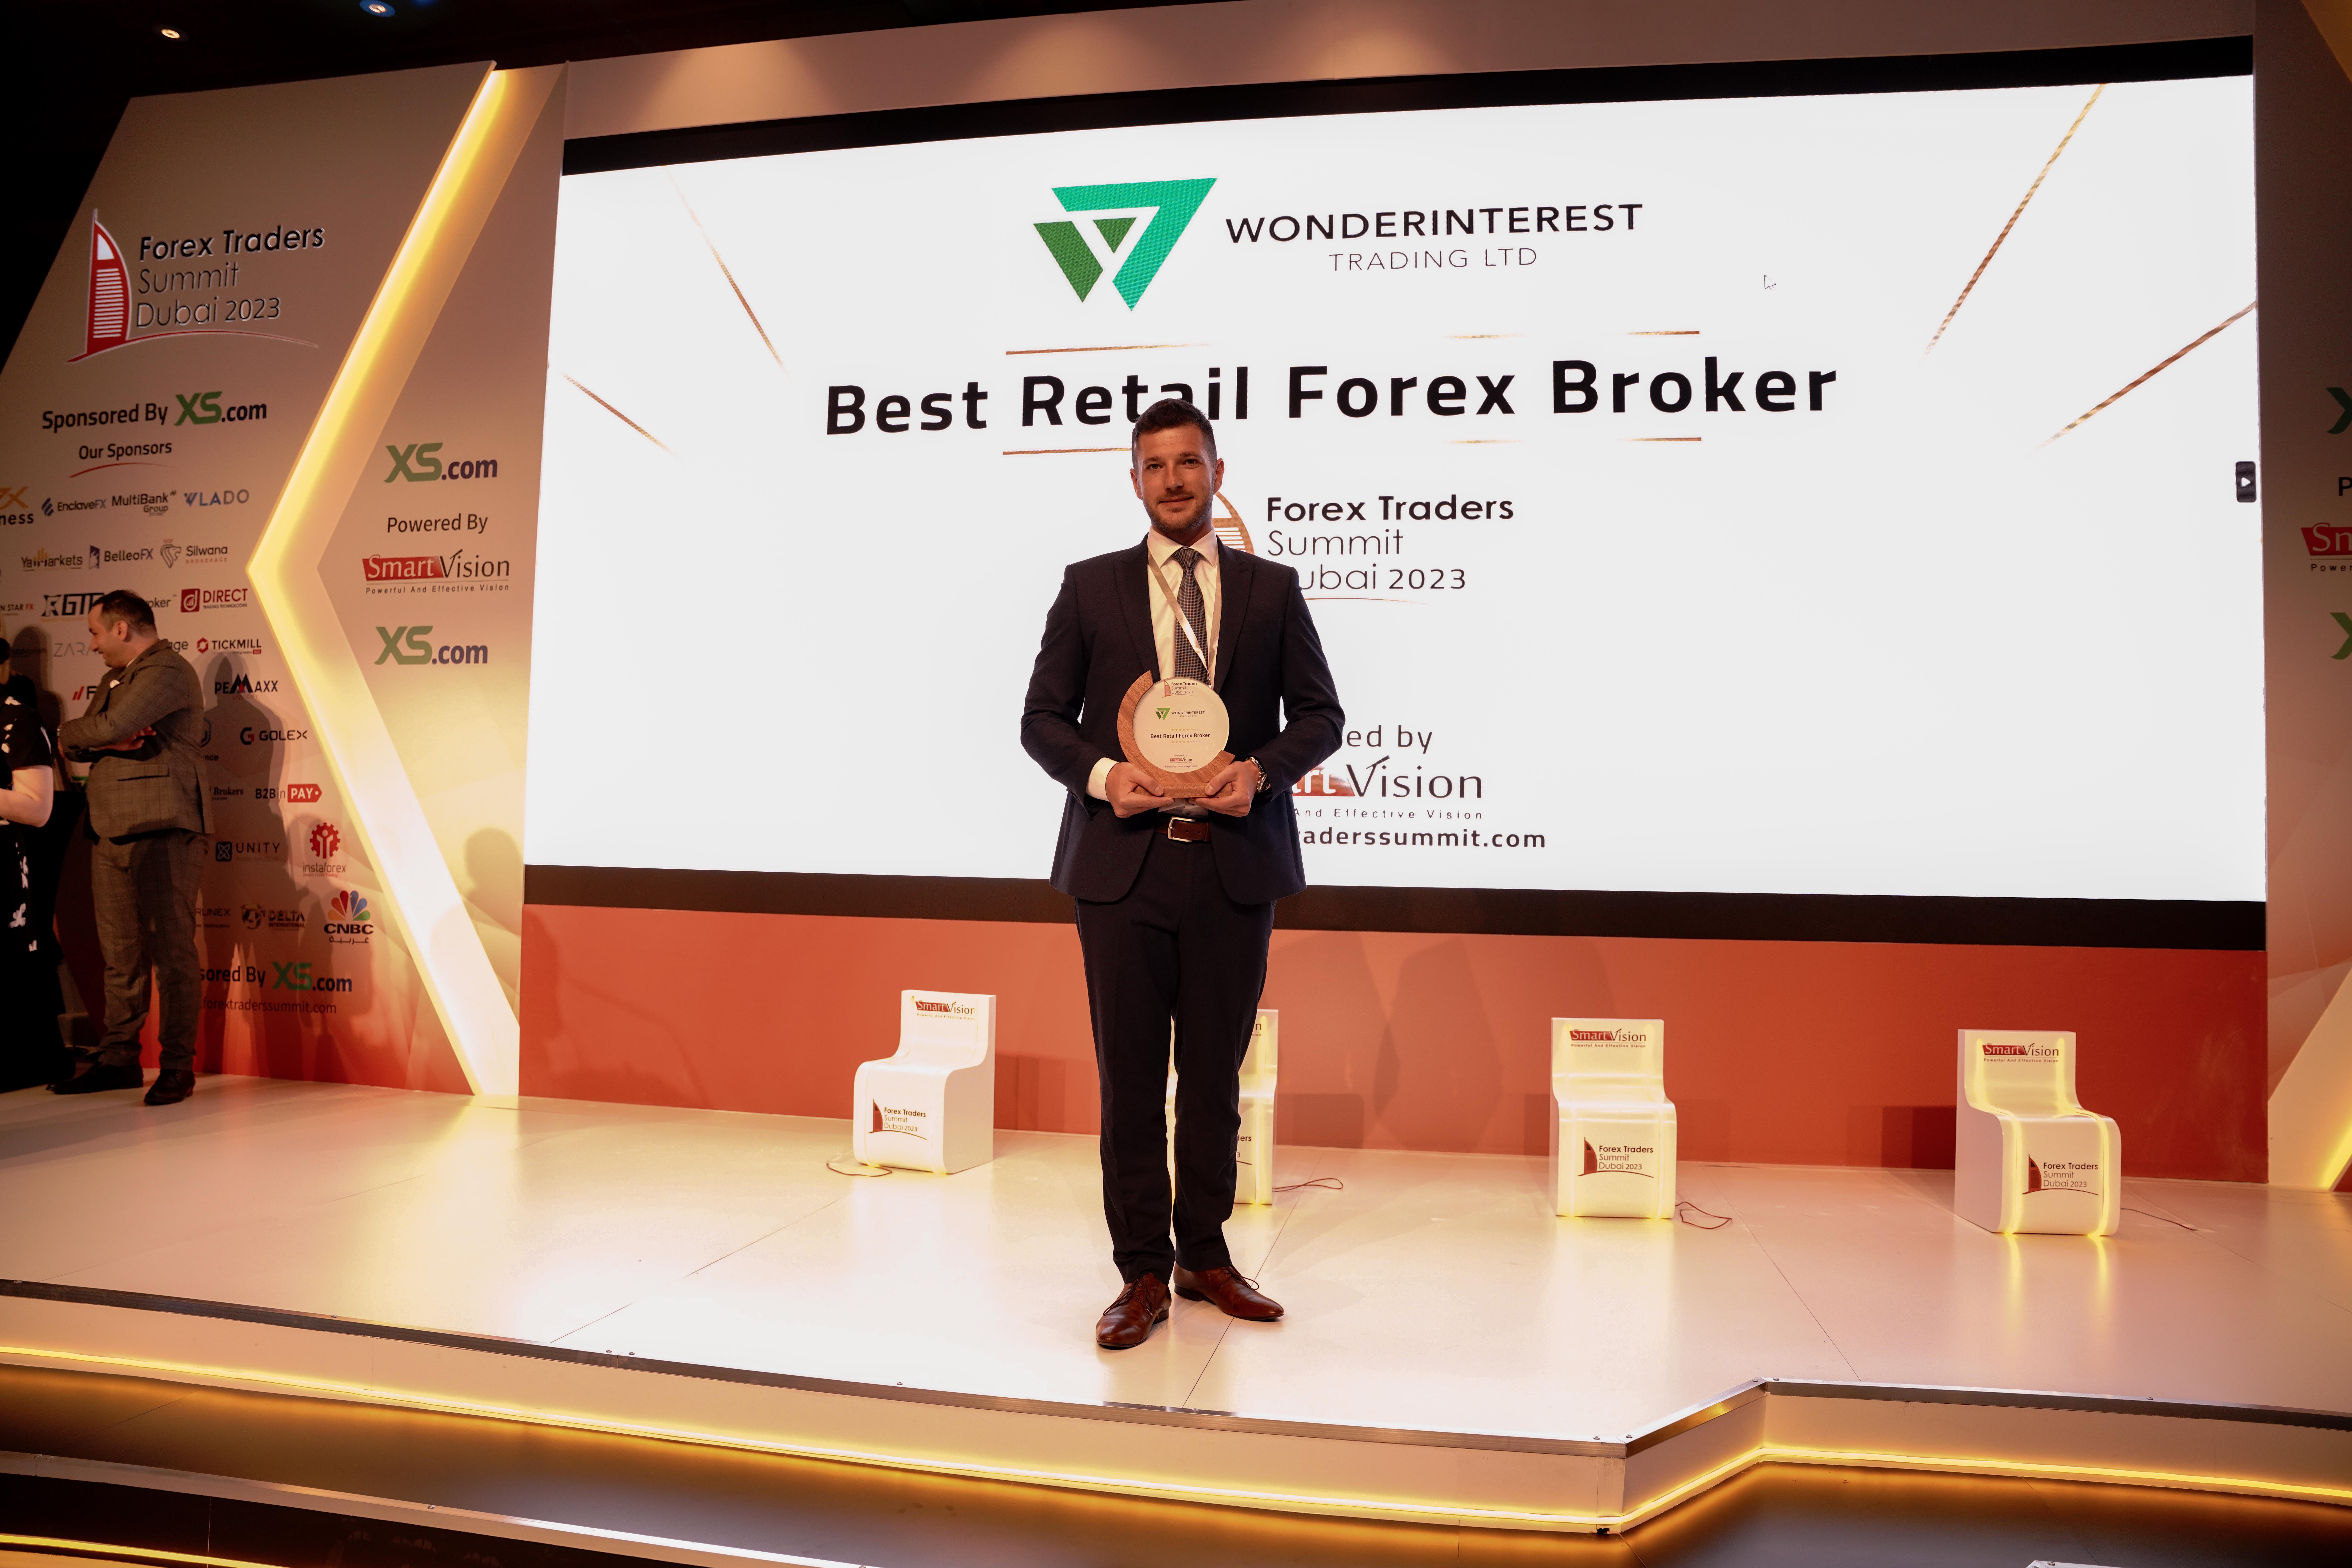 Wonderinterest | Wonderinterest Trading Ltd. Awarded Best Retail Forex Broker at Forex Trader Summit in Dubai 2023